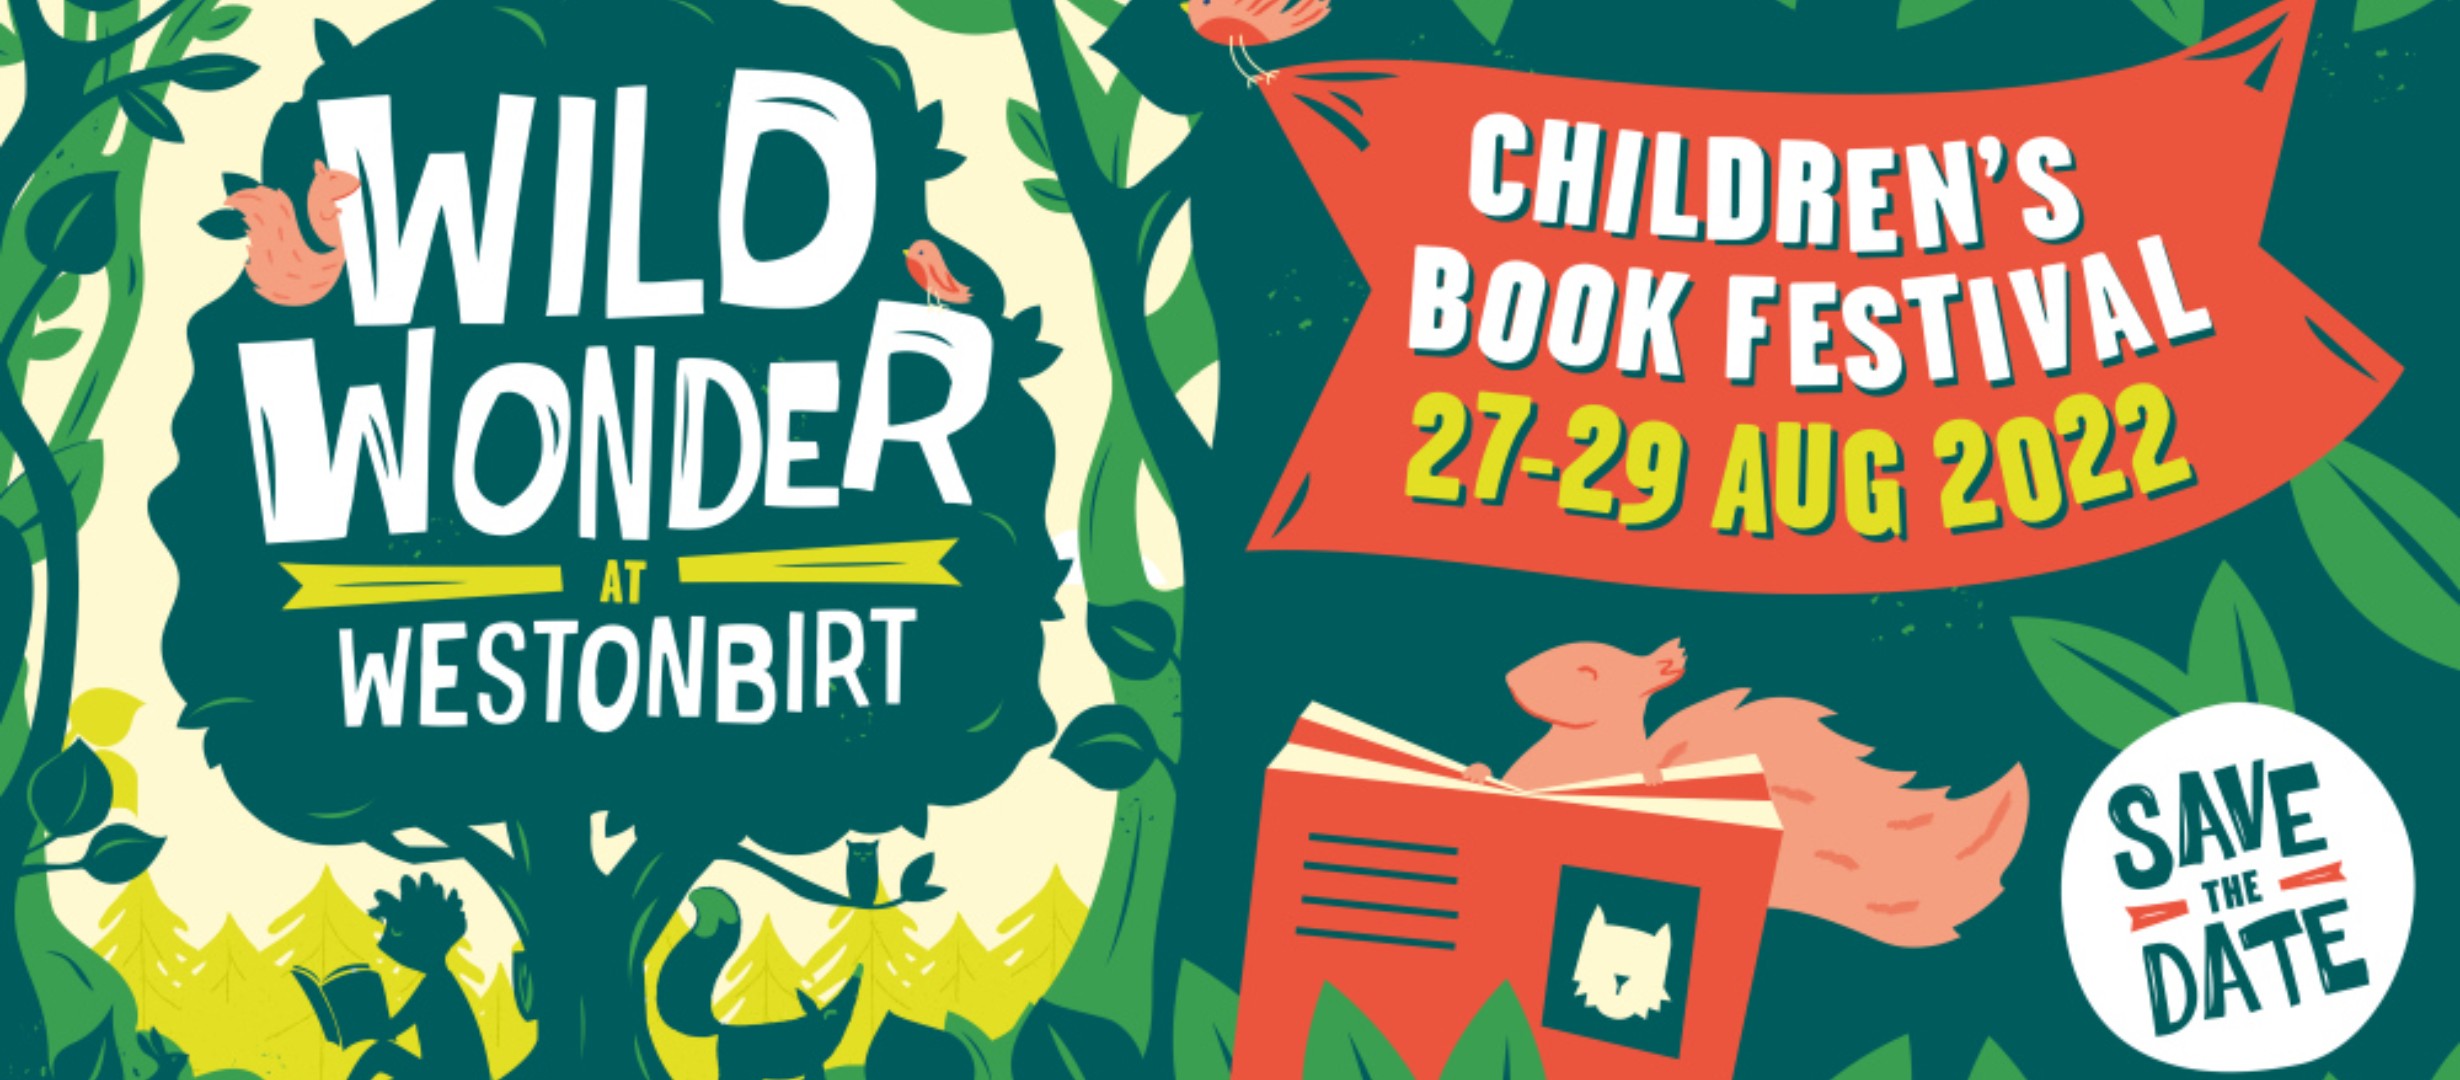 text reads 'wild wonder at Westonbirt. Children's book festival 27-29 August 2022. Save the date.